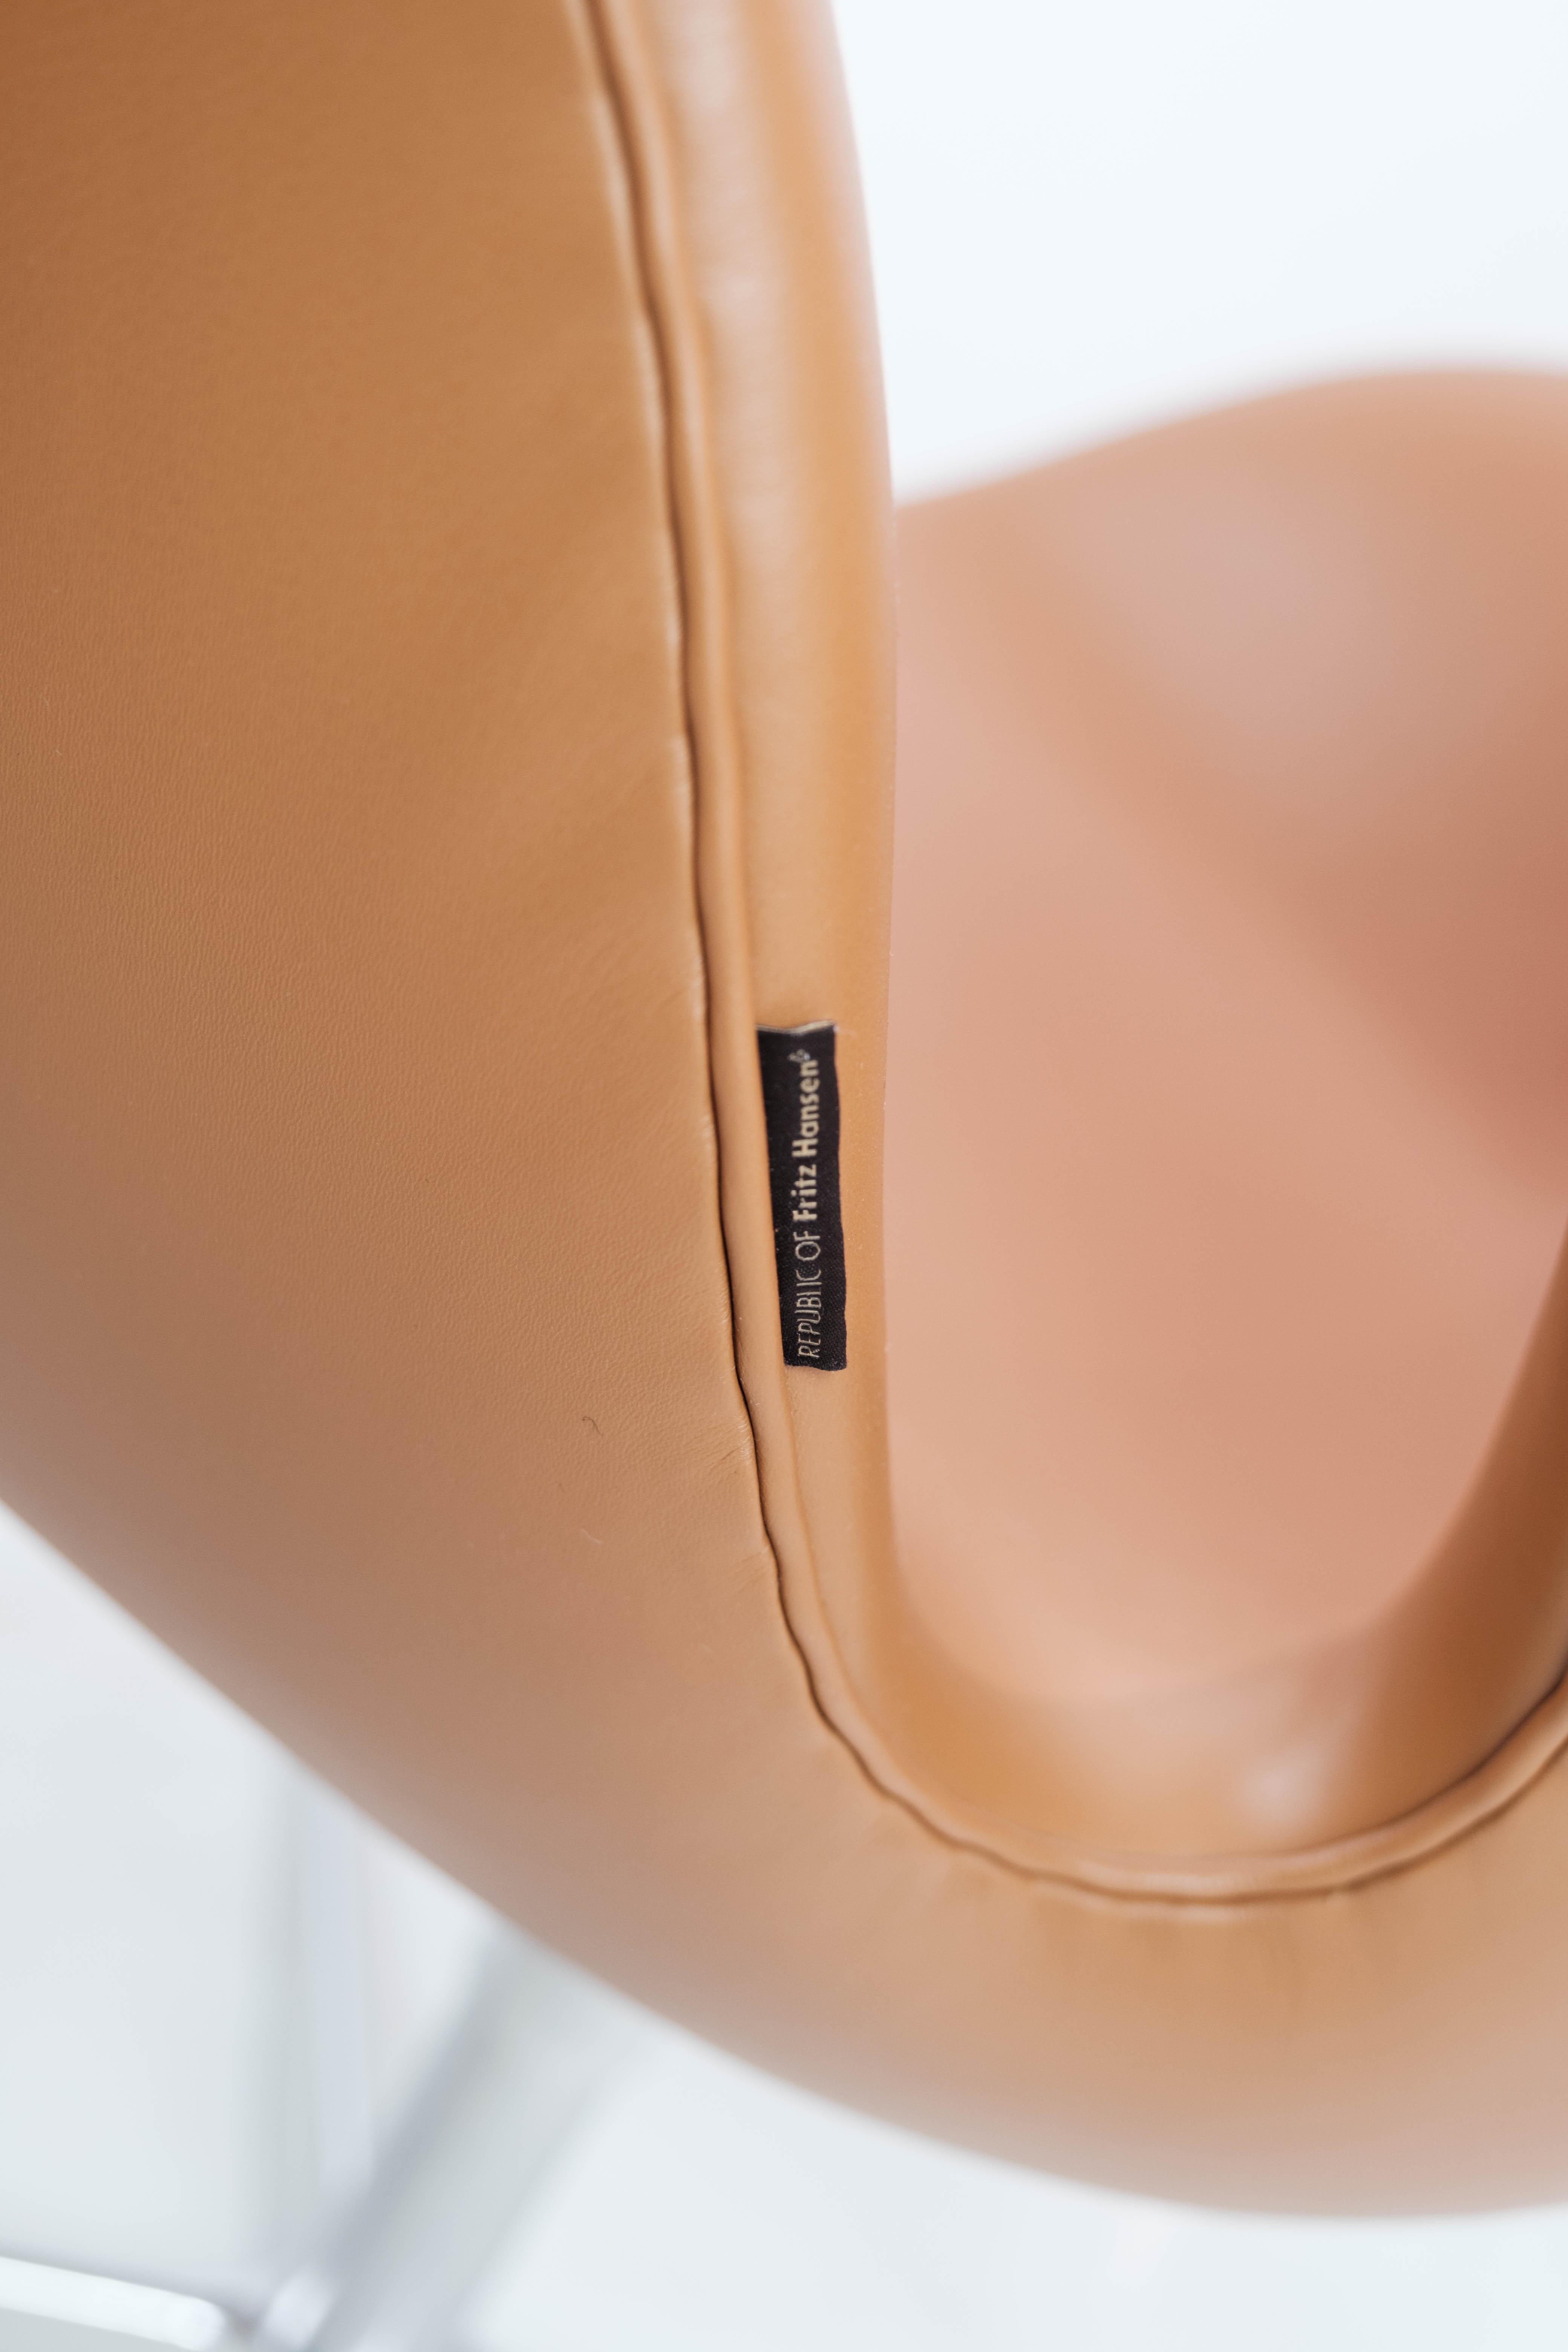 Metal Swan Chair, Model 3320, Designed by Arne Jacobsen